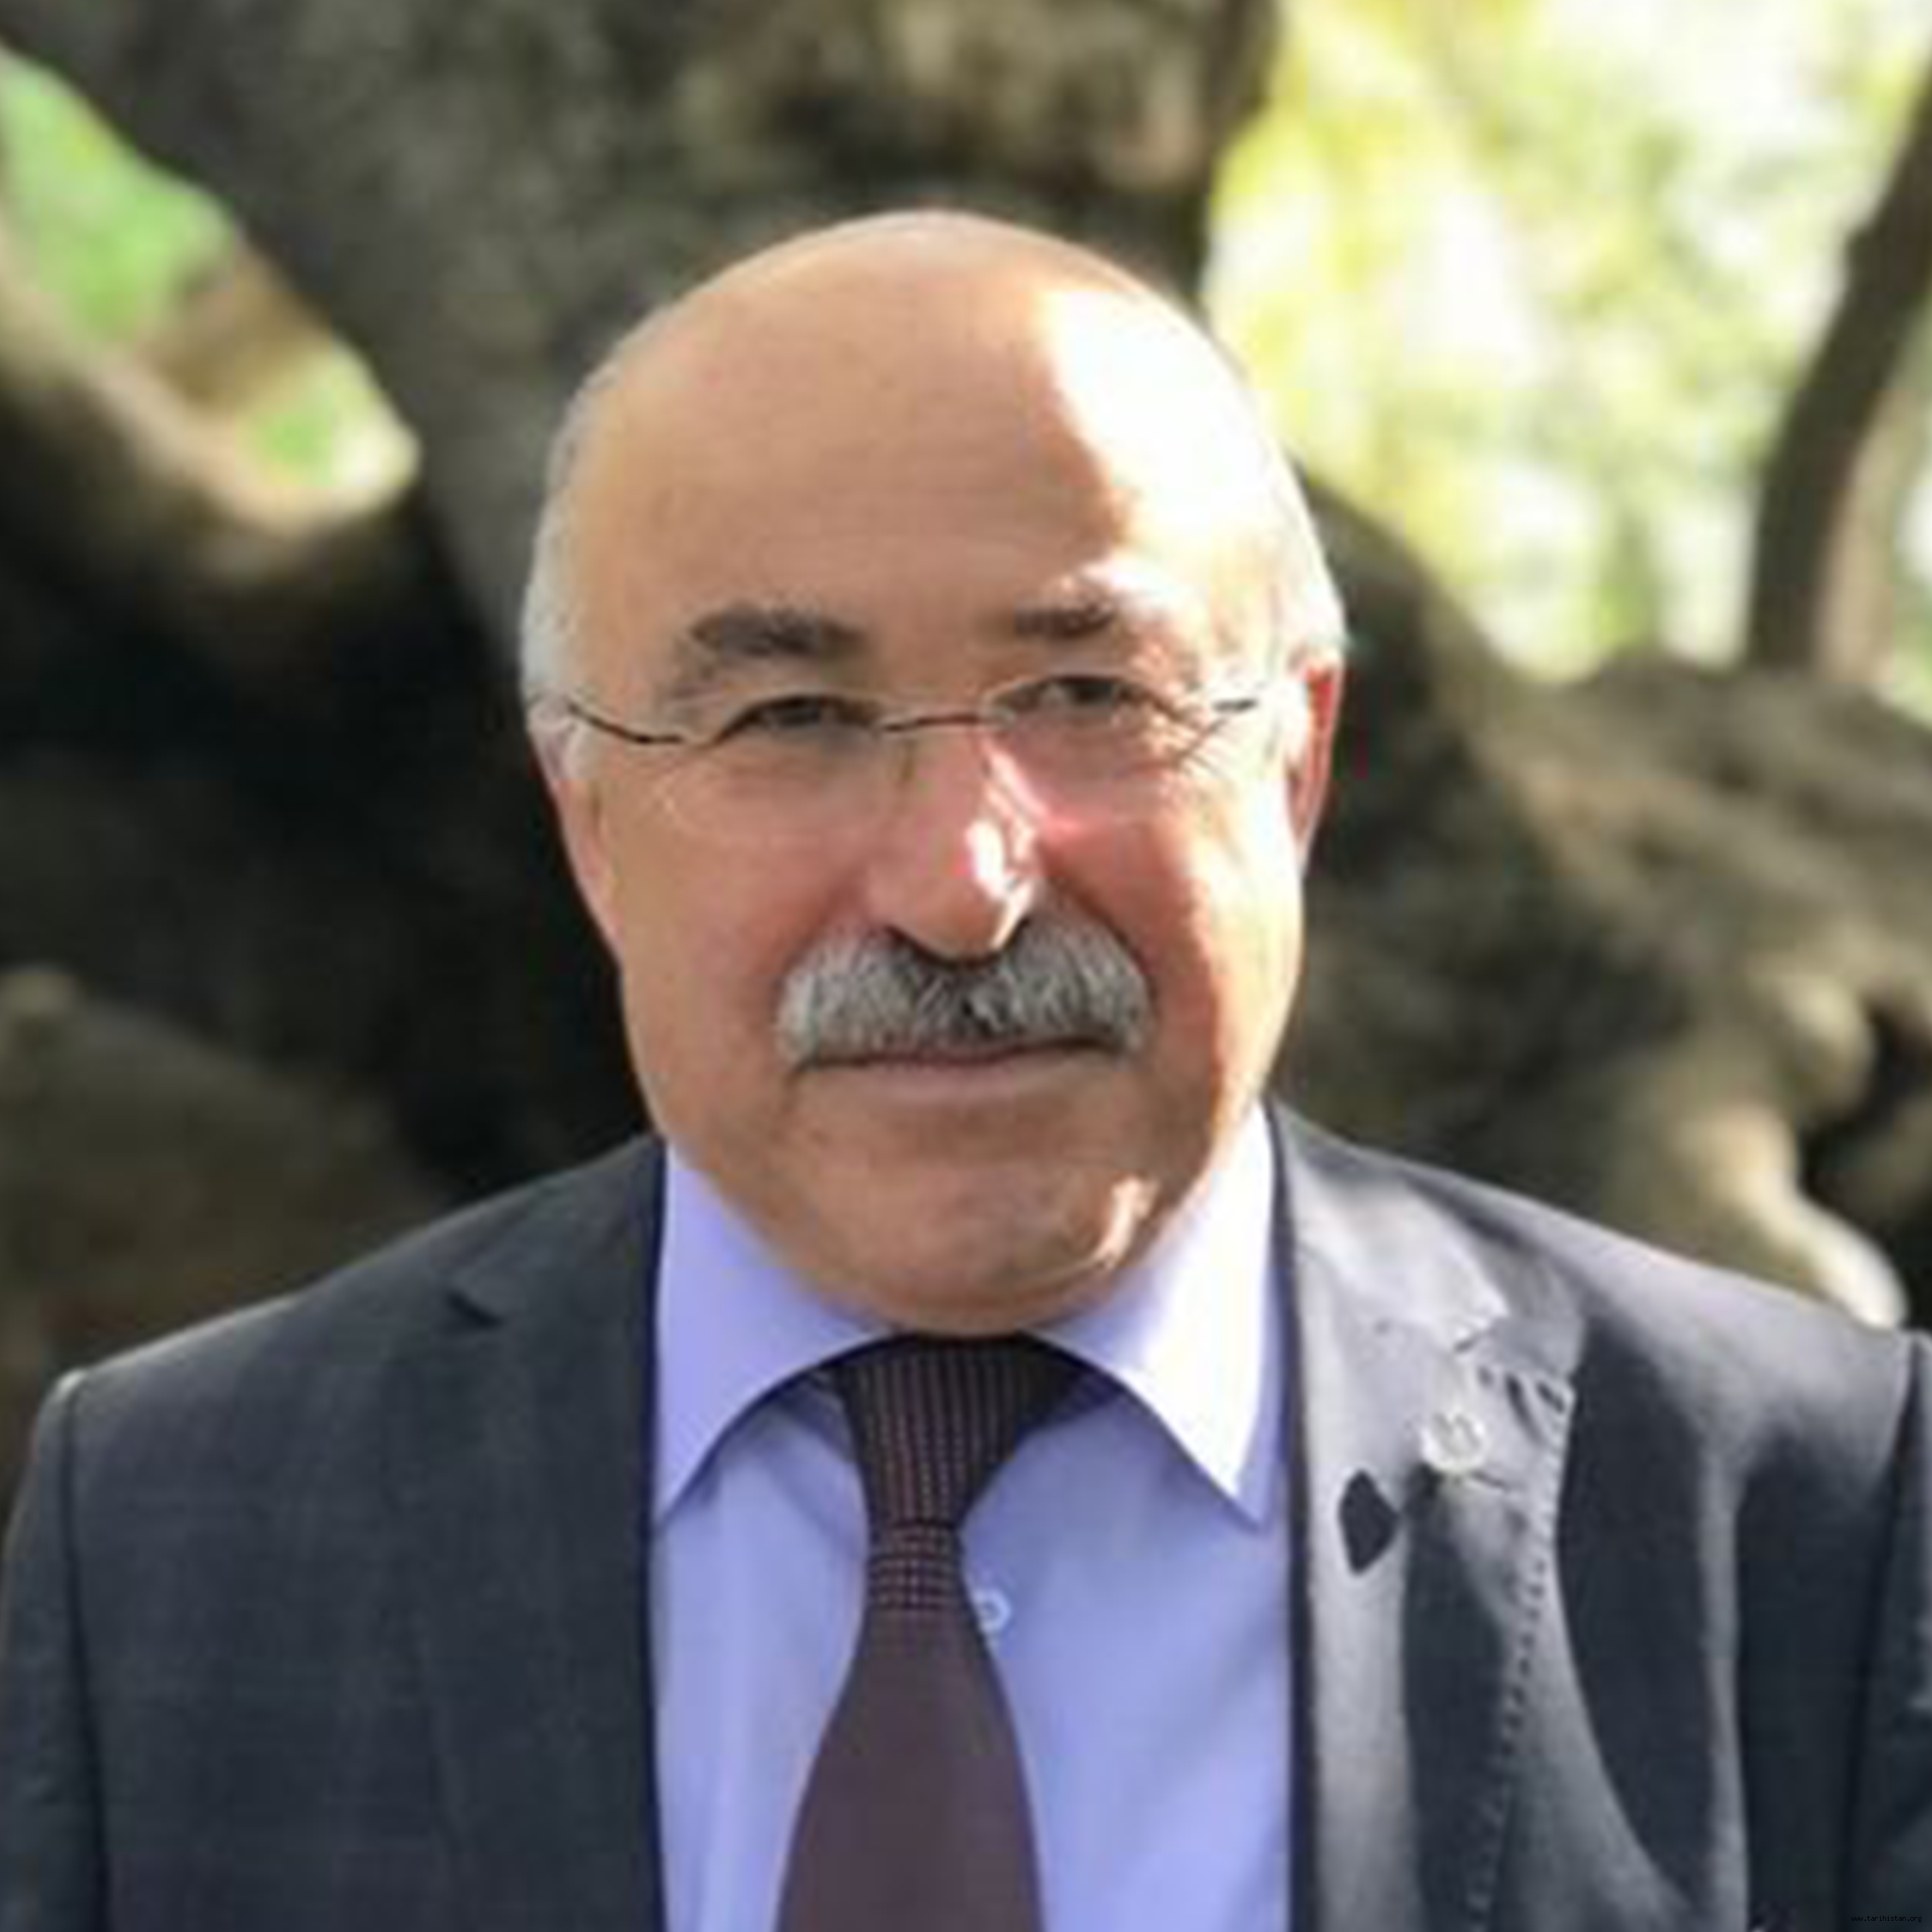 Zor Zamanlarda Birlik Olmak - Yazan: Prof. Dr. Mehmet ÖZ